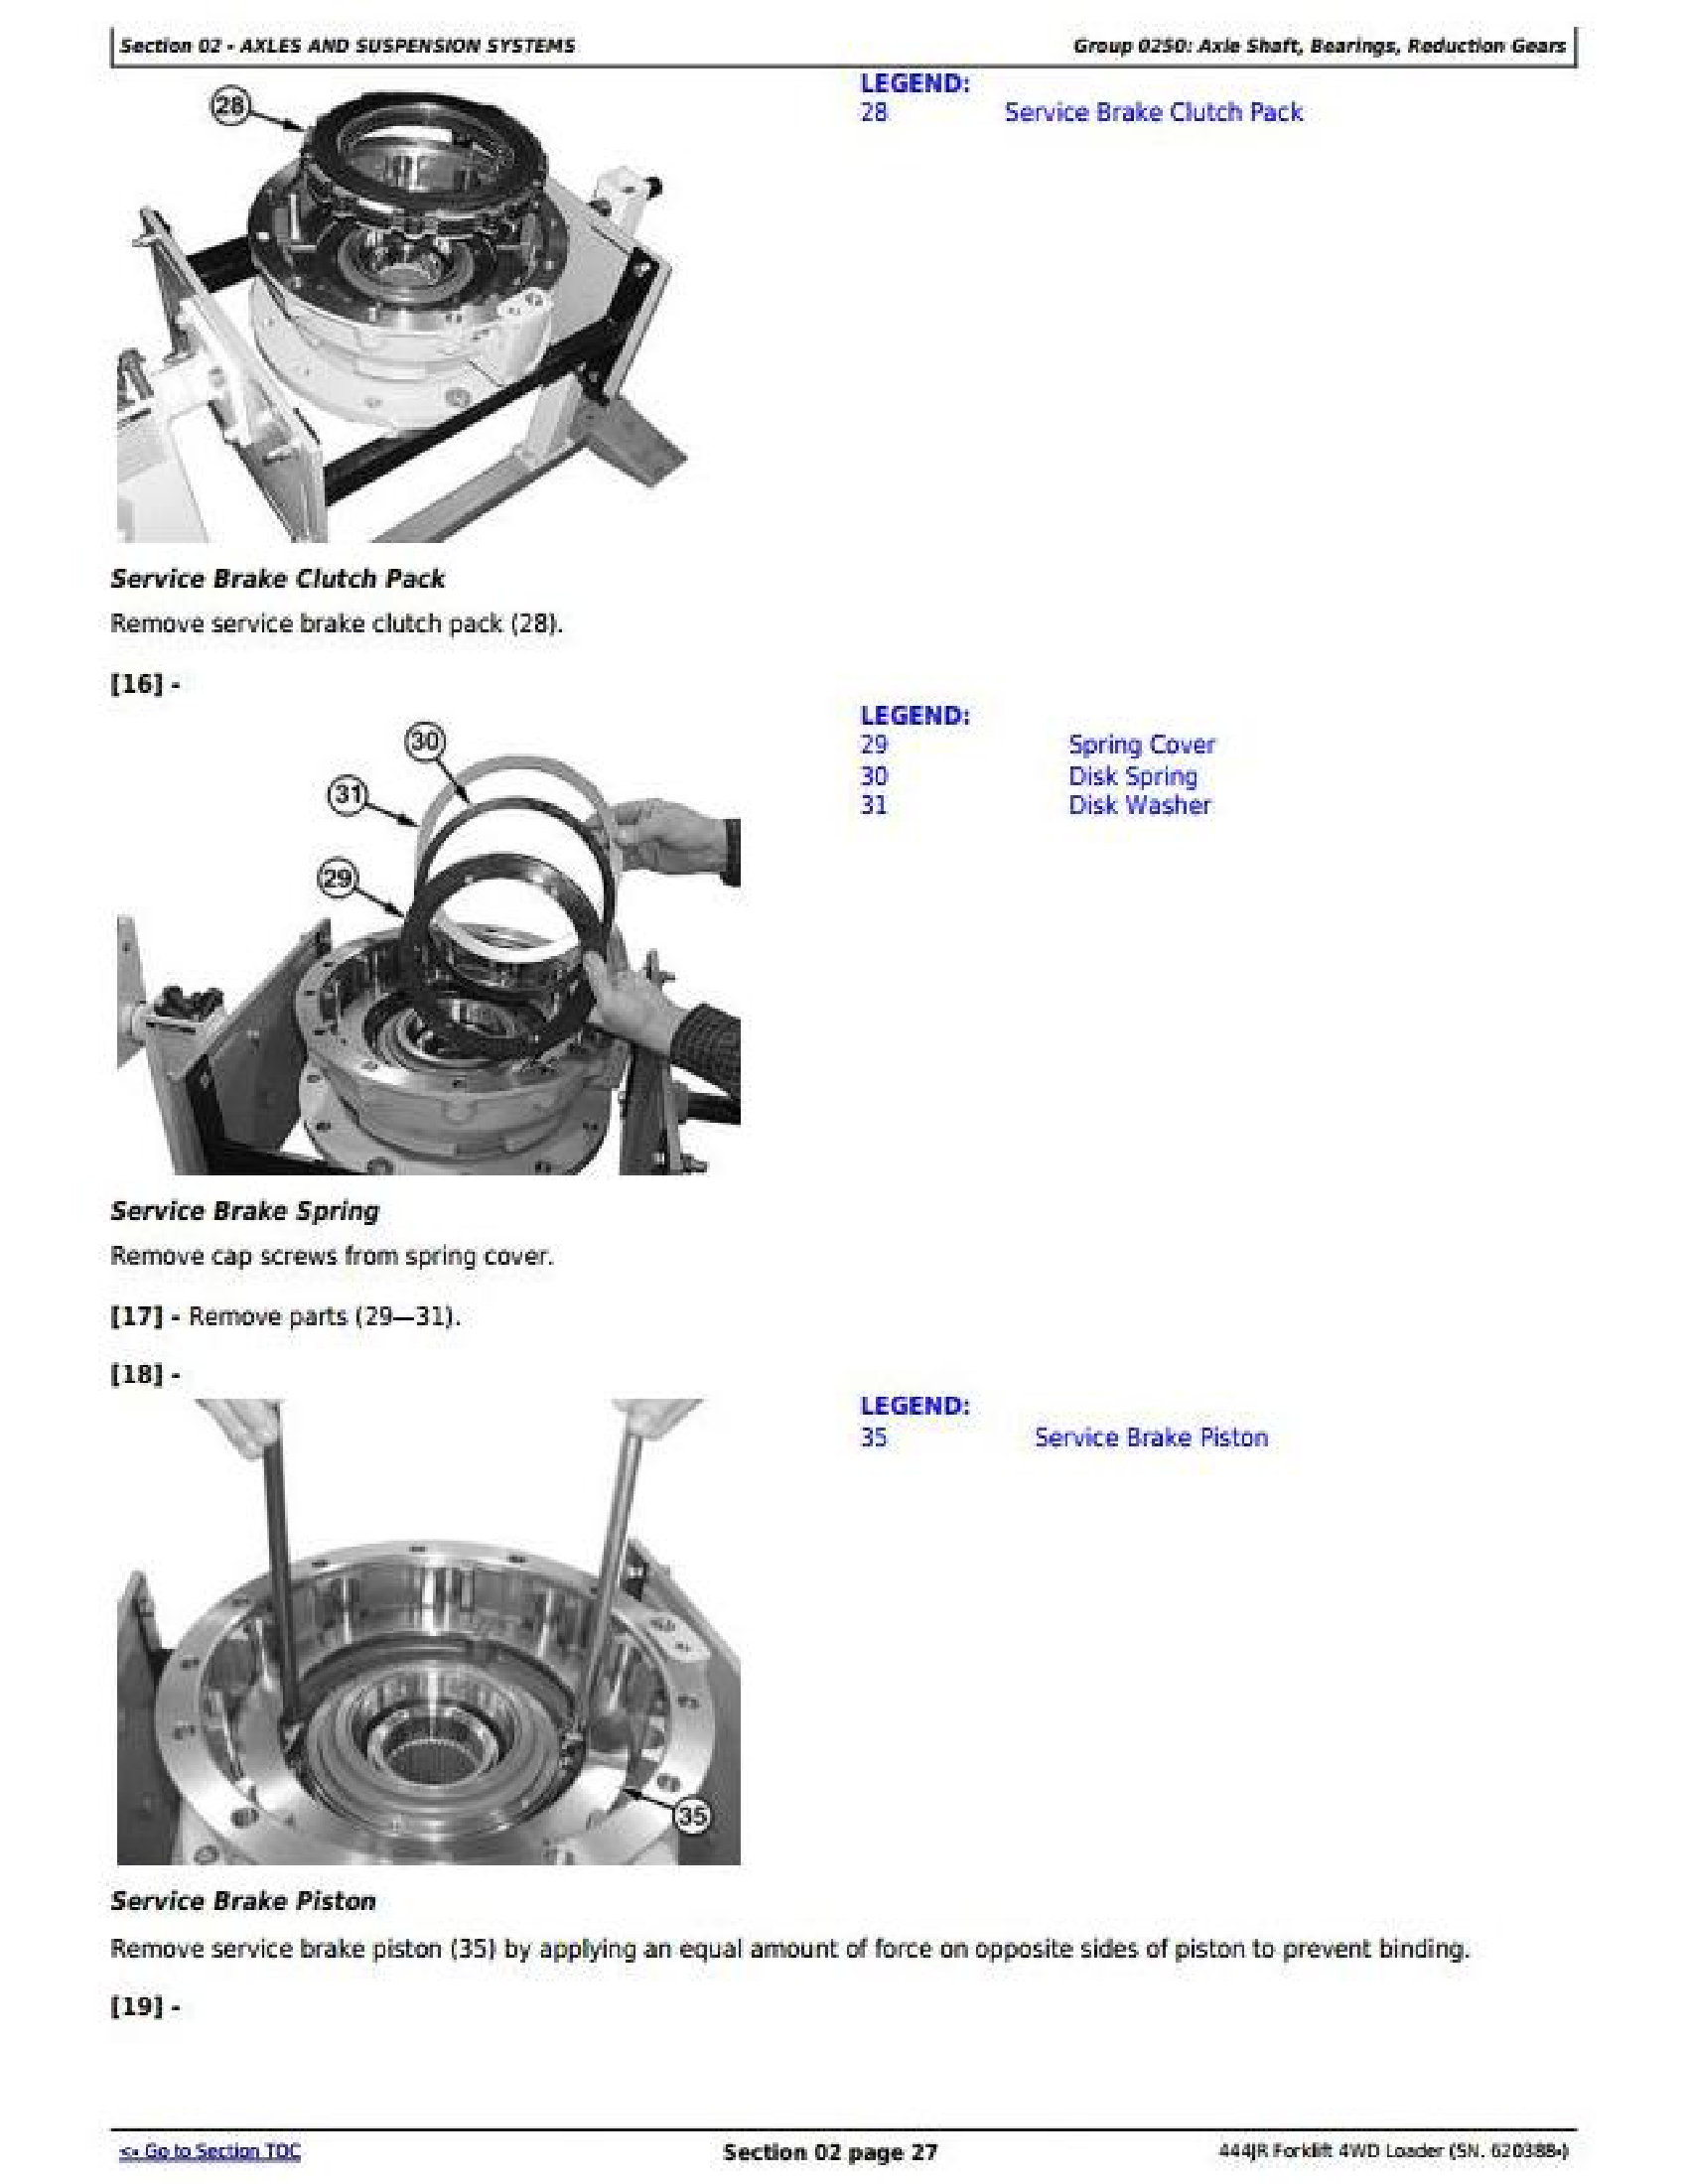 John Deere 6930 manual pdf